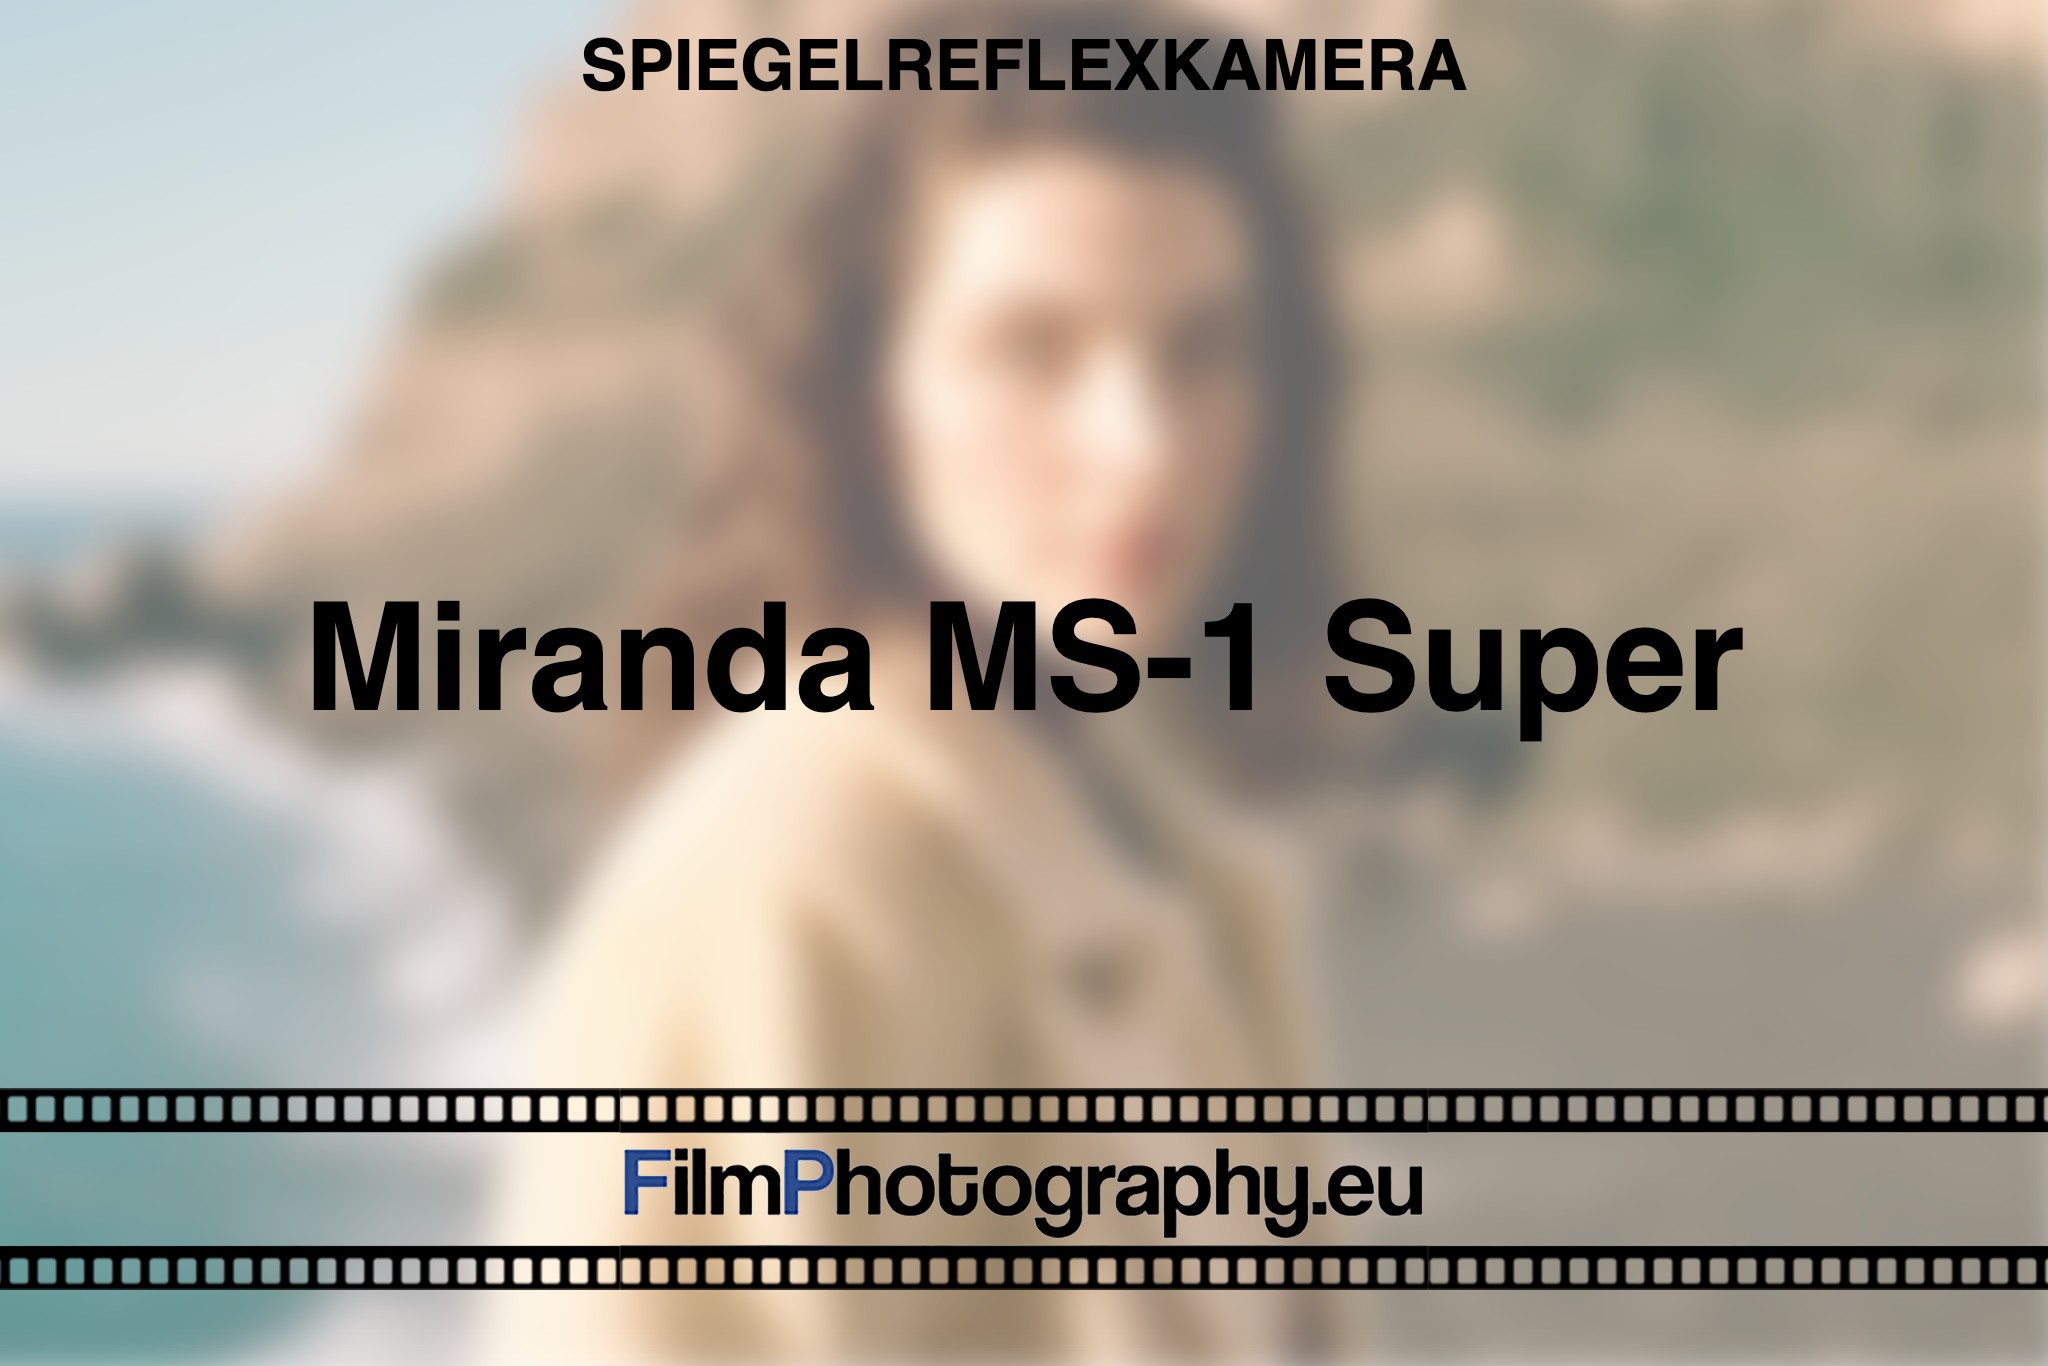 miranda-ms-1-super-spiegelreflexkamera-bnv